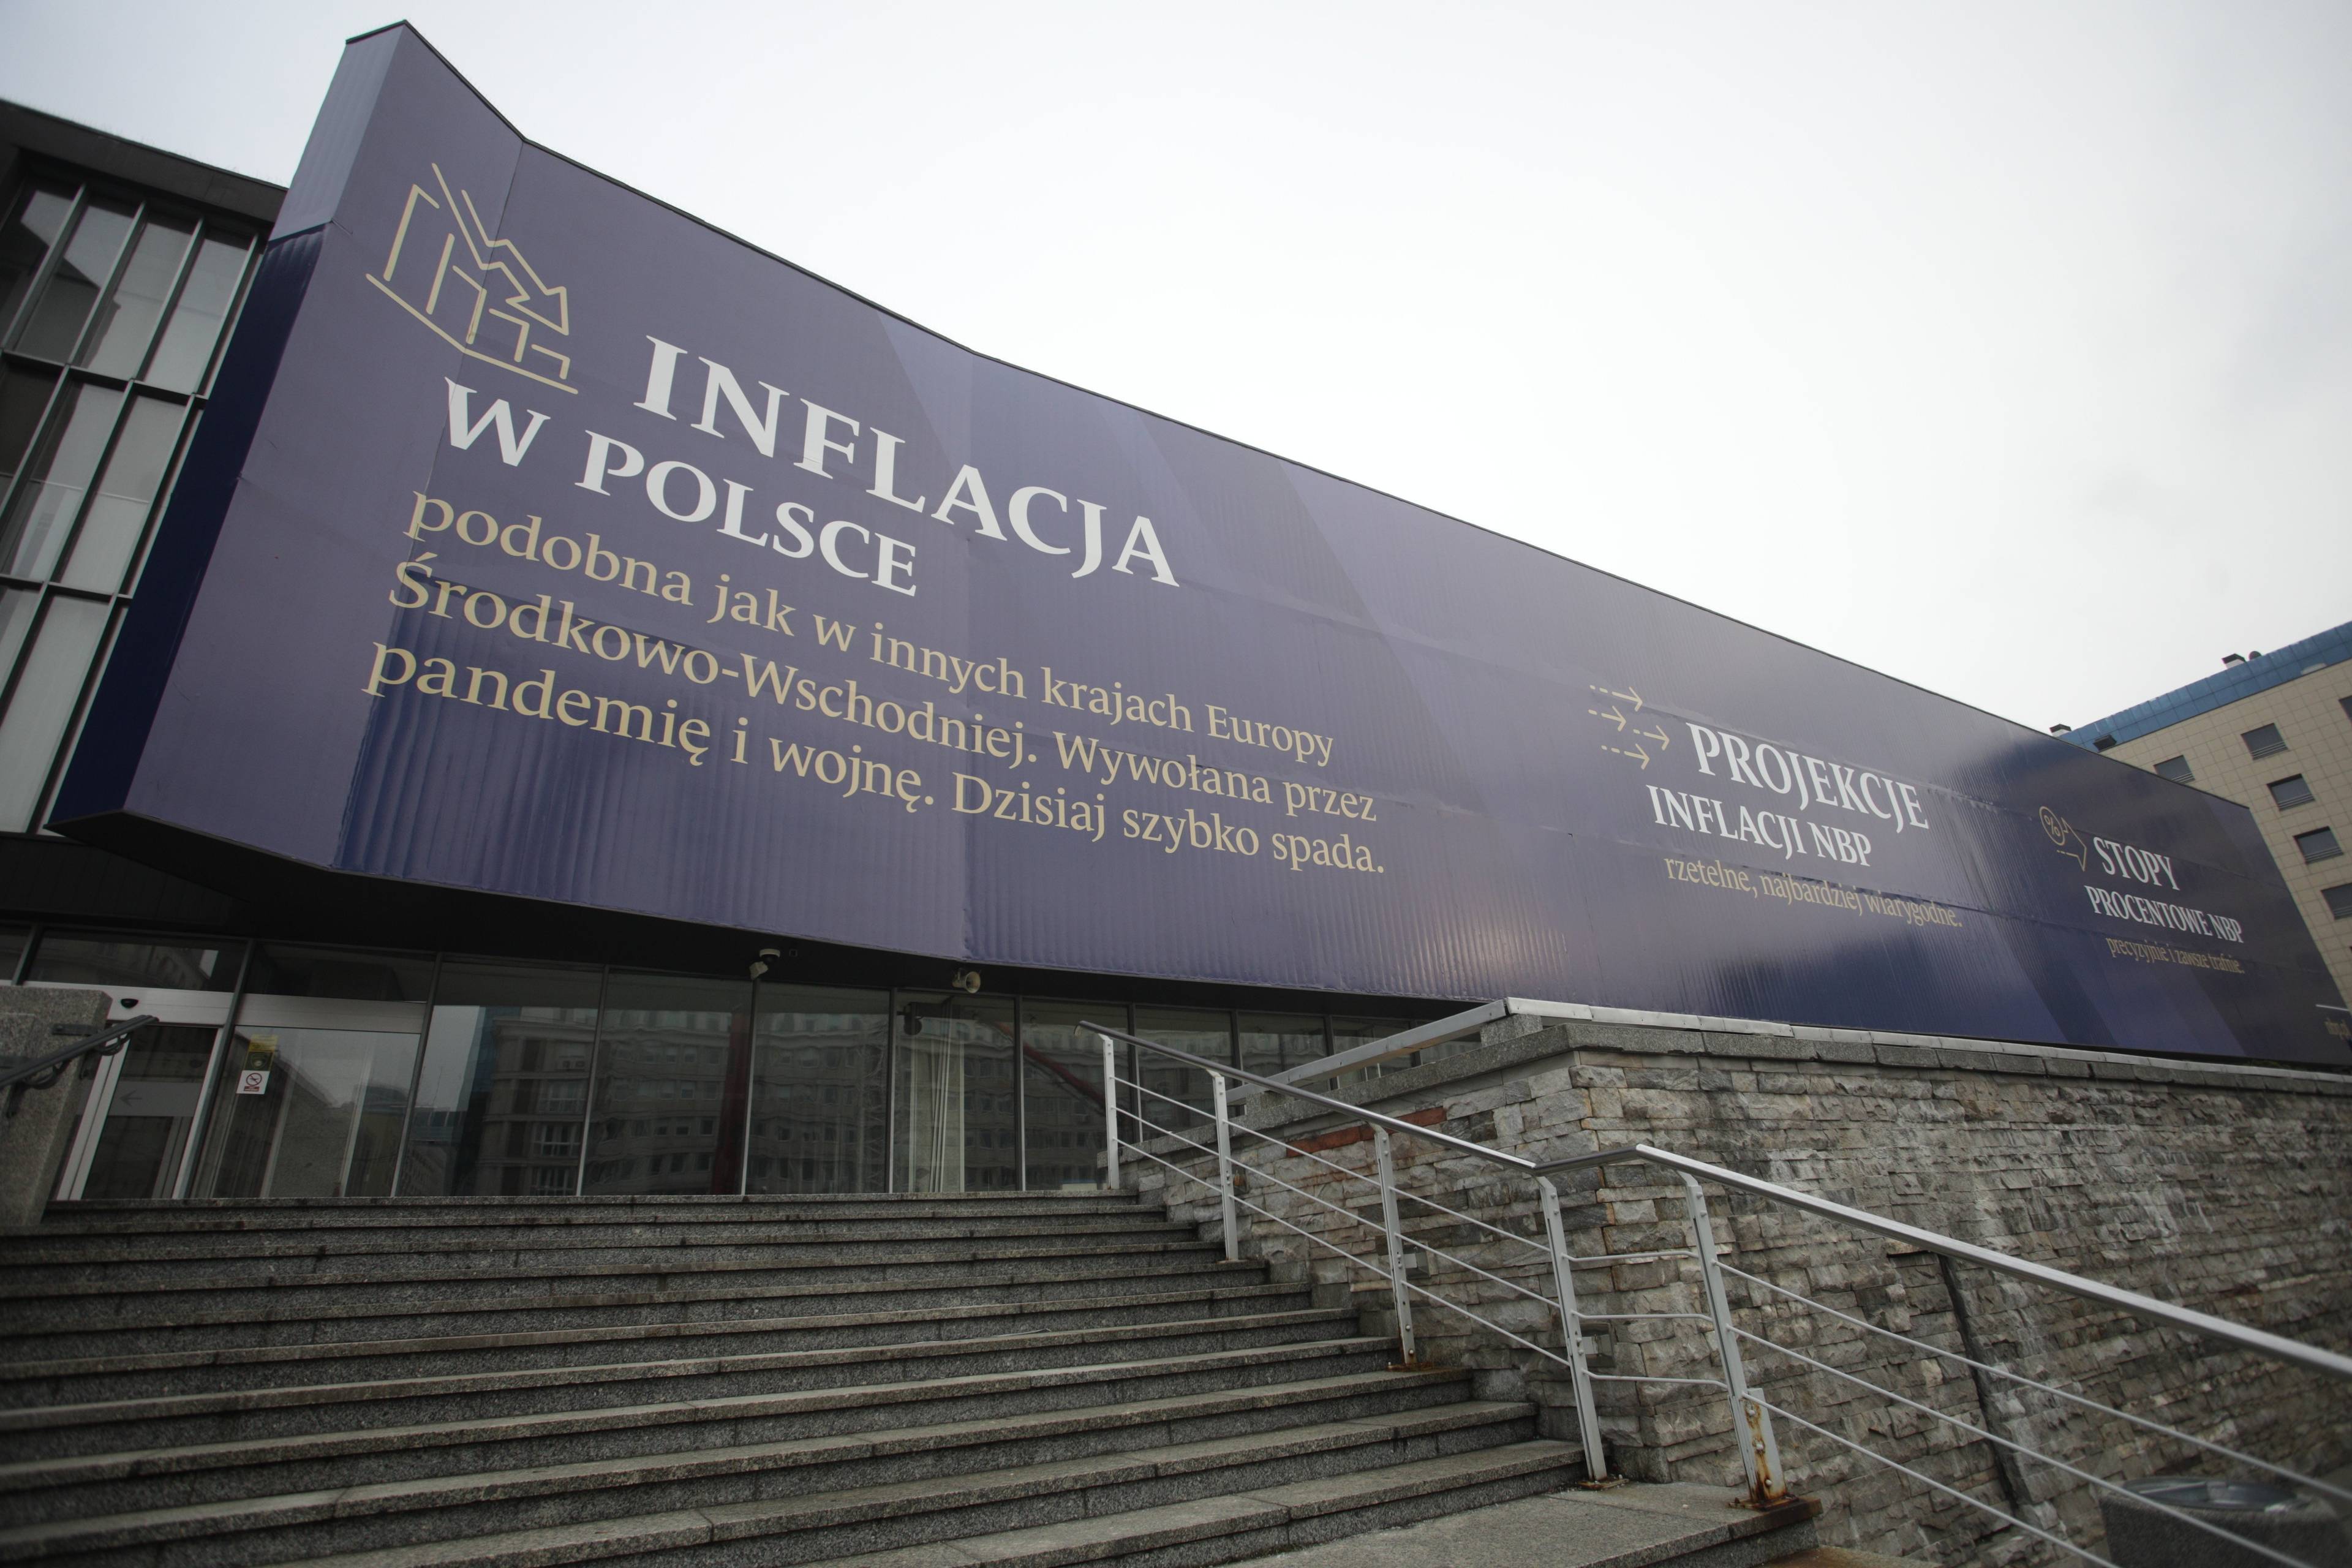 Baner na elewacji budynku Narodowego Banku Polskiego. Napis o inflacji: wywołana przez pandemie i wojnę ,dzisiaj szybko spada